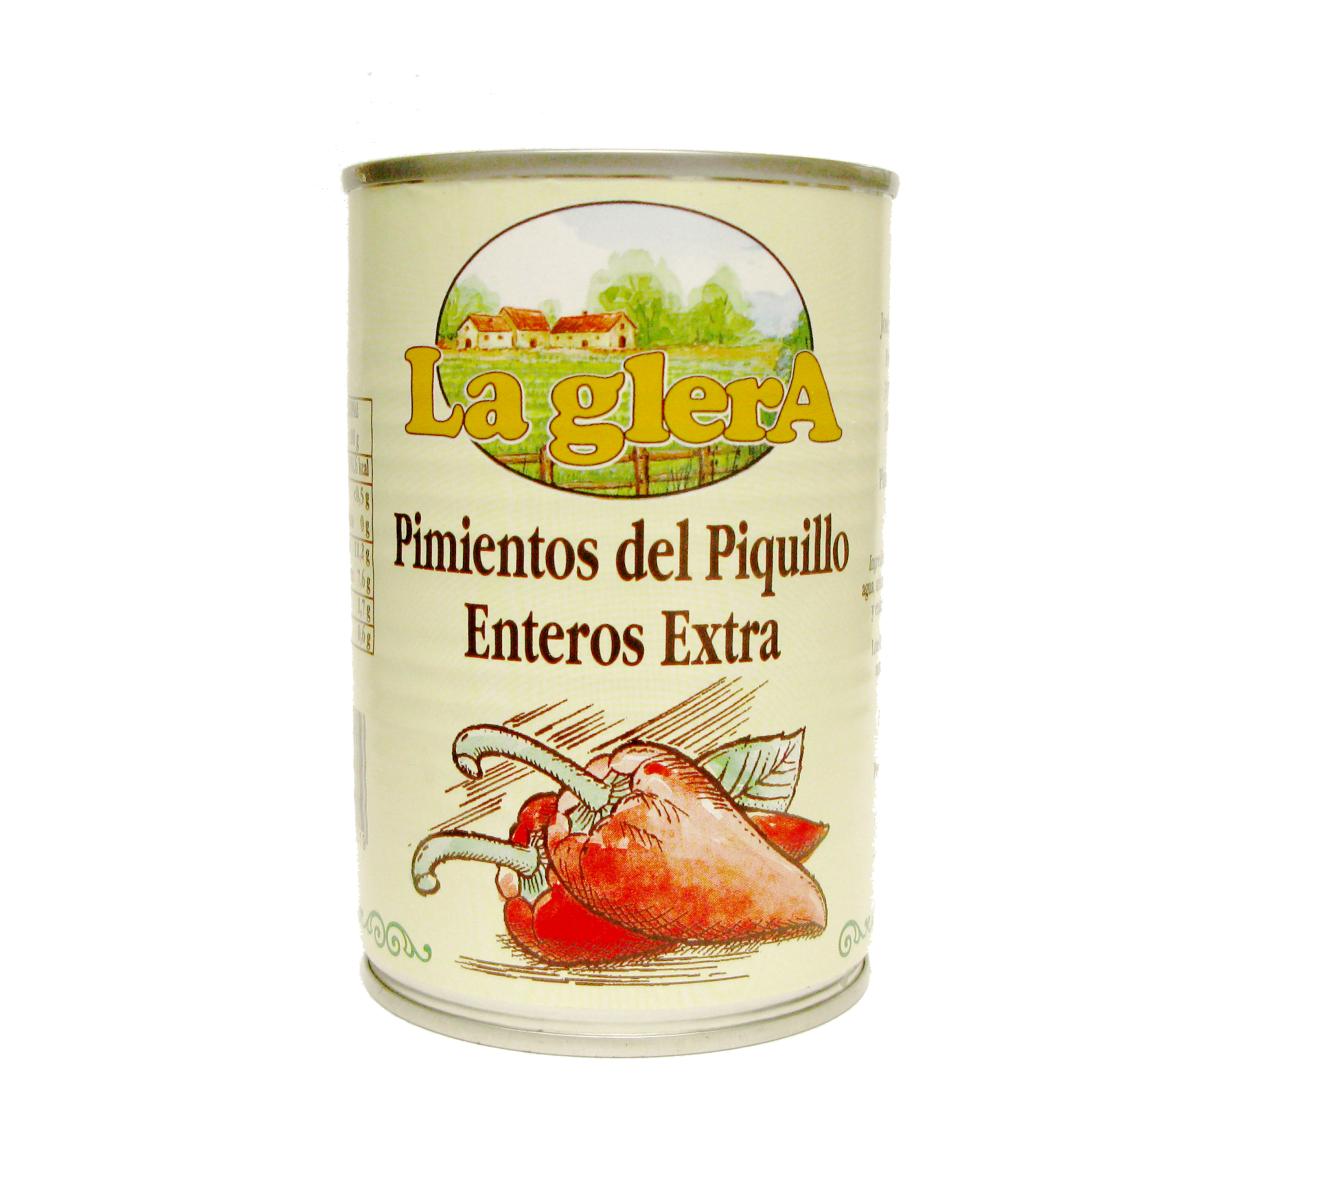 【公式ショップ】 ピキージョ種の赤ピーマン缶詰 Pimientos del Piquillo ピミエントス デル ピキージョ 390g godhammer.com